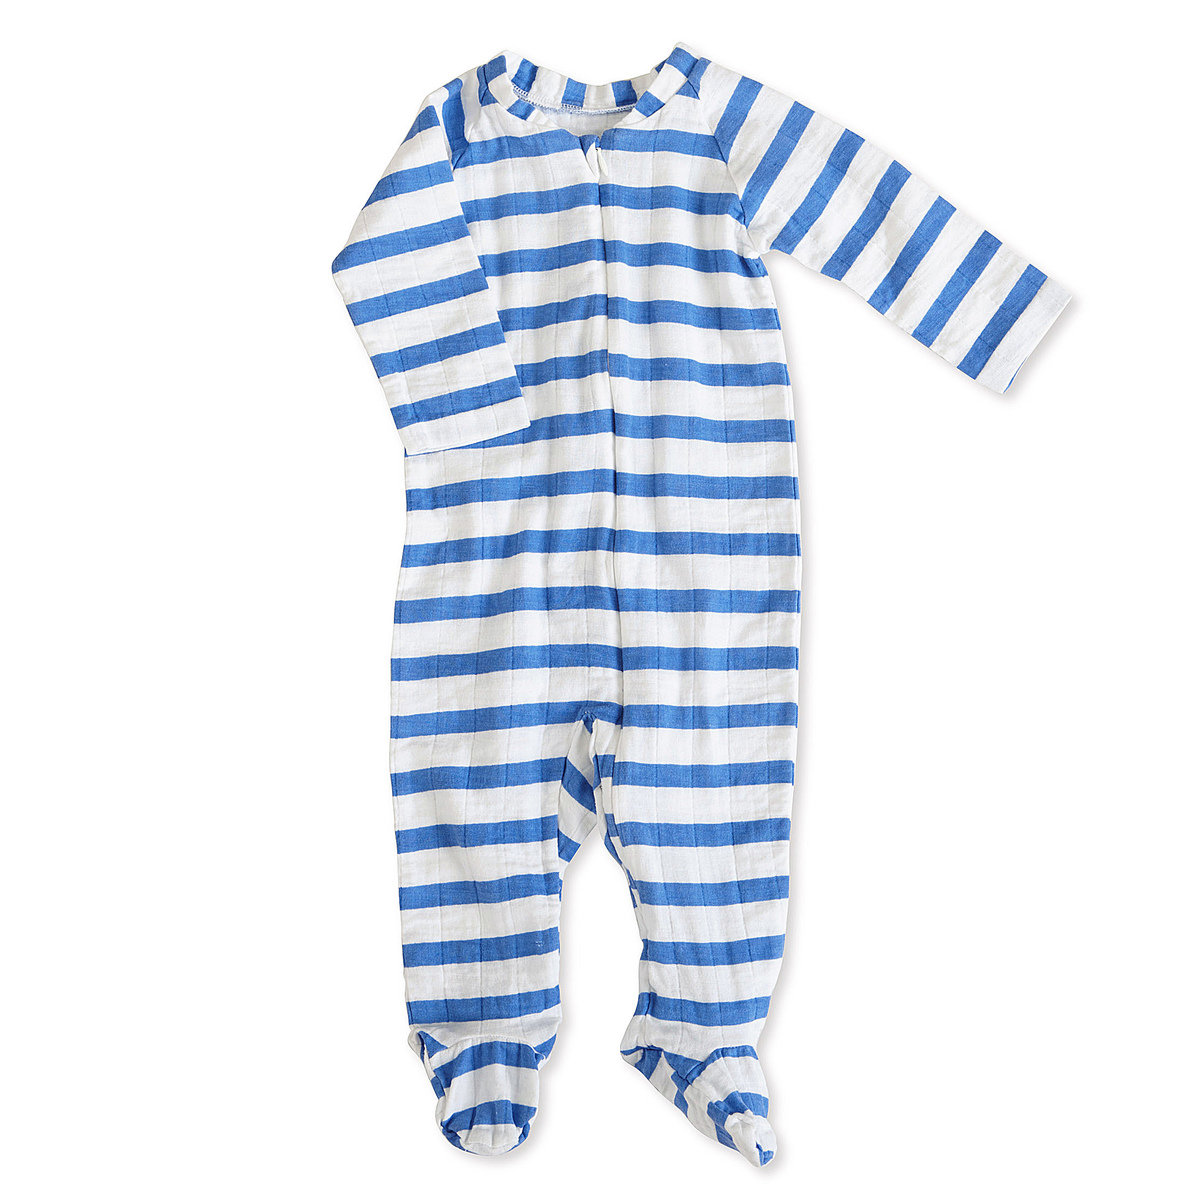 aden + anais Boys 6-9 Months Ultramarine Blazer Stripe Muslin Long-Sleeve Zip One Piece